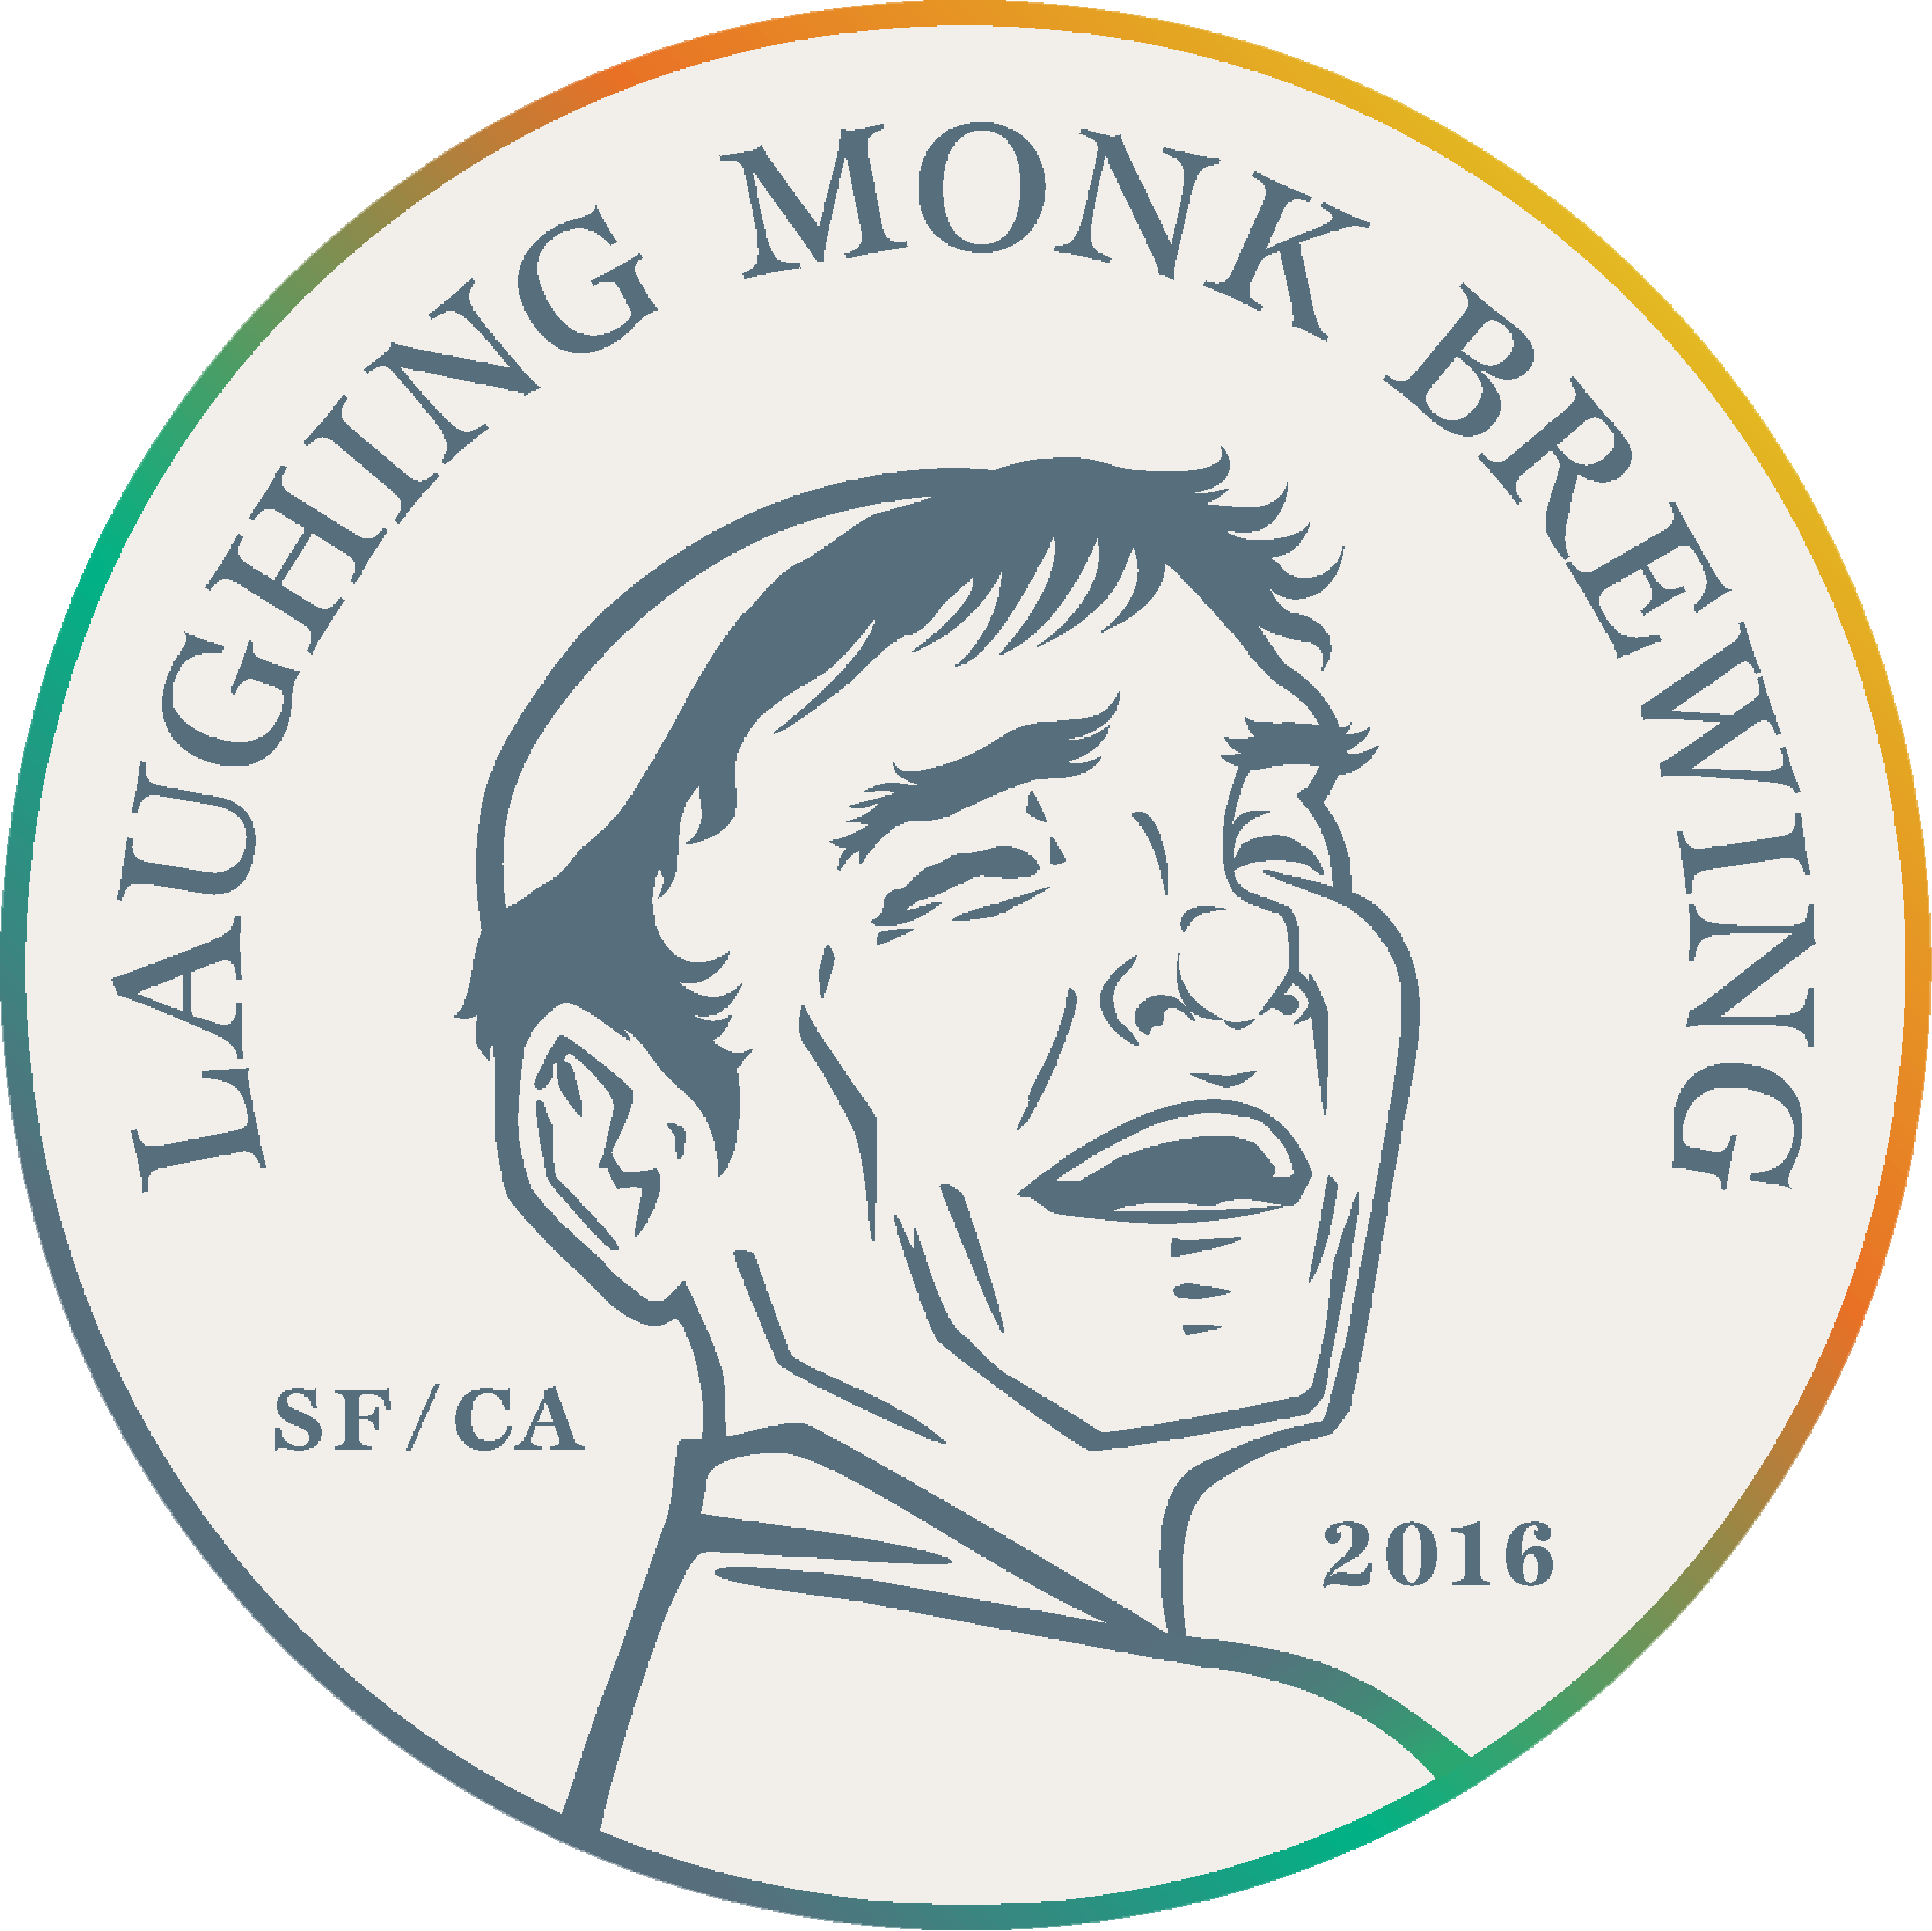 laughing-monk